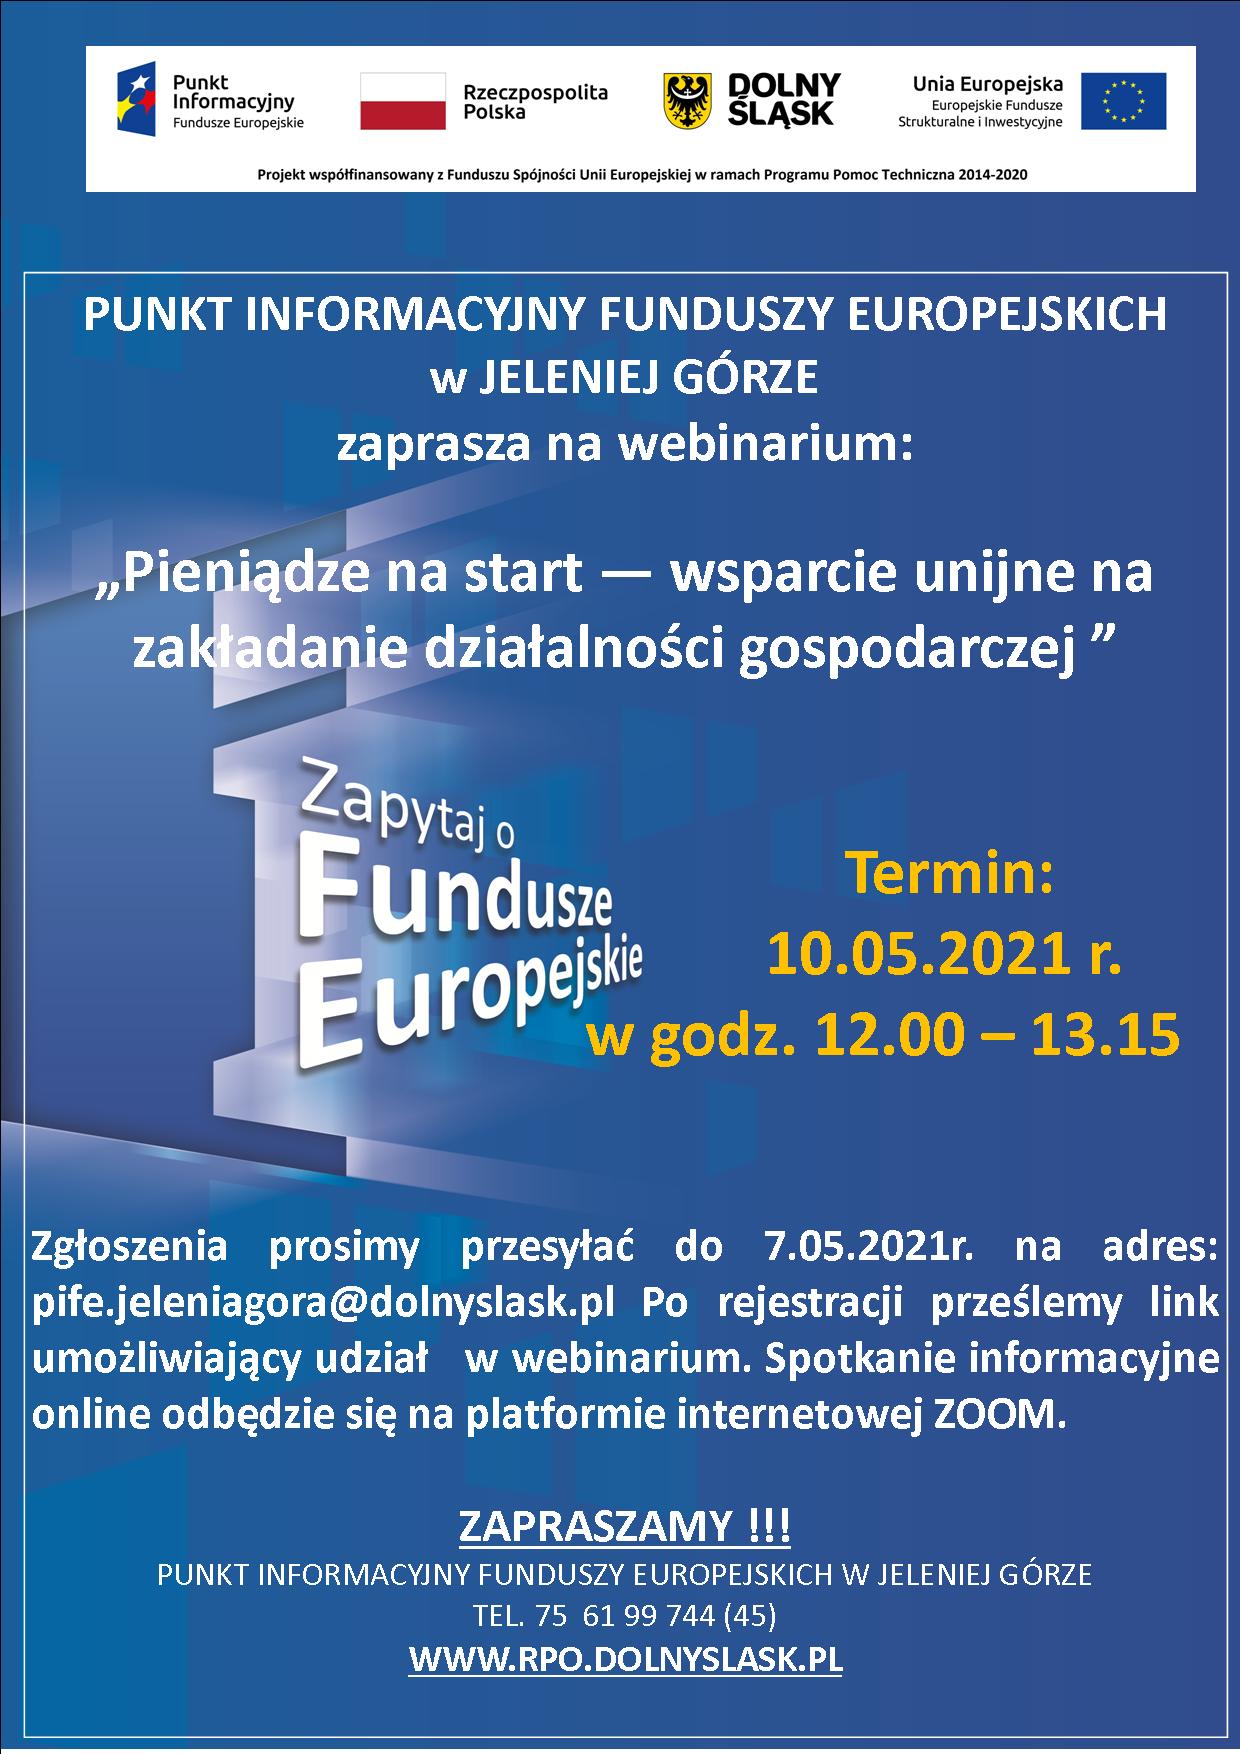 Punkt Informacyjny Funduszy Europejskich w Jeleniej Górze zaprasza  na webinarium pt. „Pieniądze na start – wsparcie unijne na zakładanie działalności gospodarczej”   –  10 maja  2021 r.